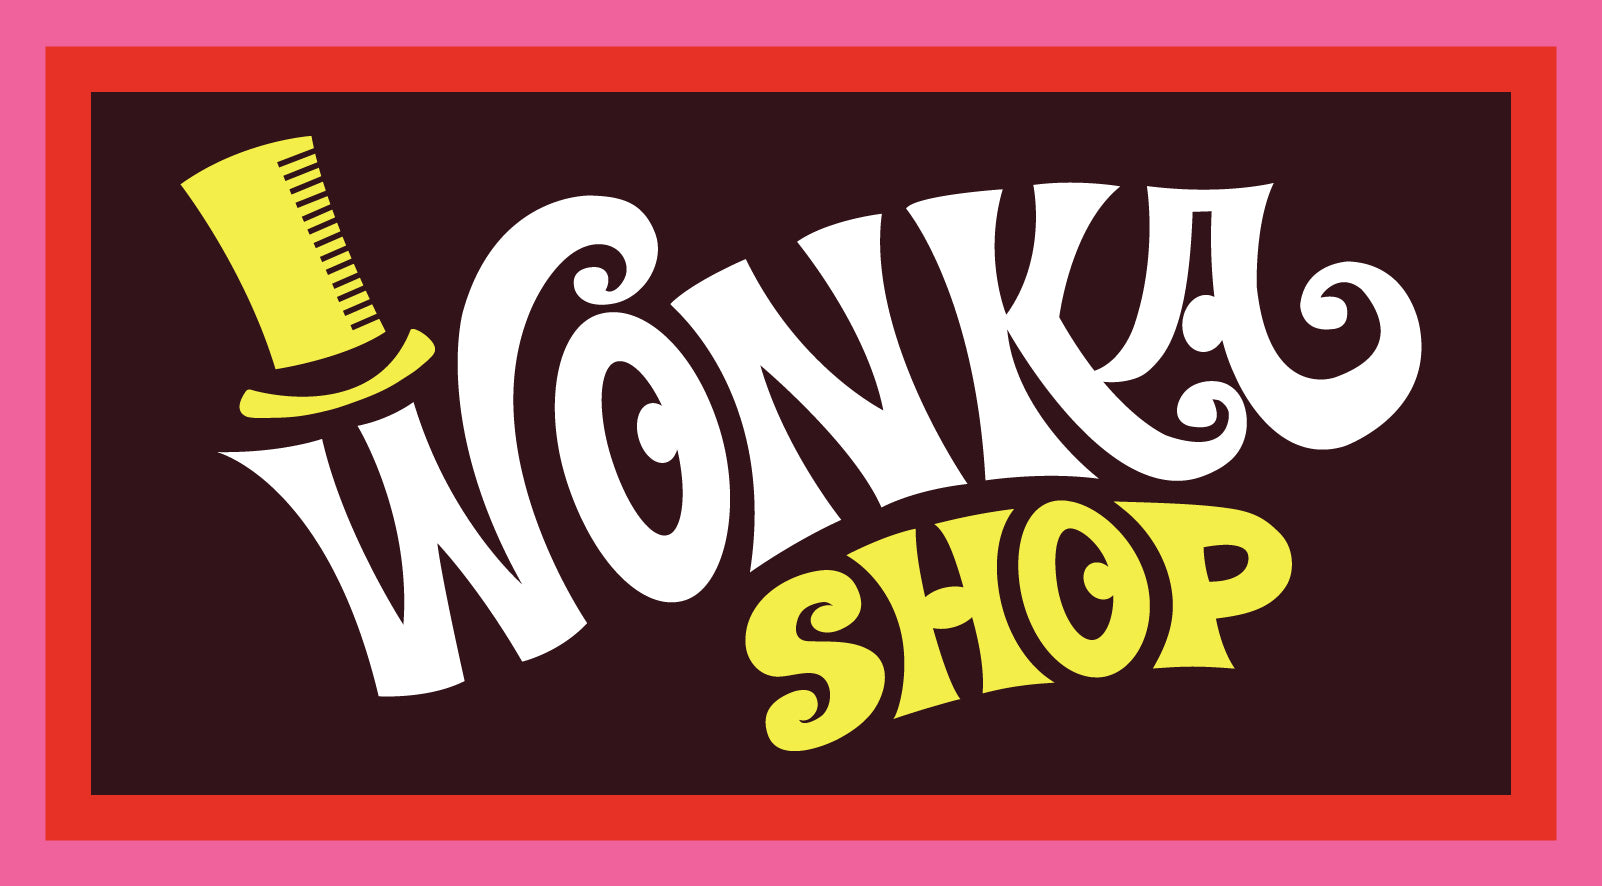 wonka candy store